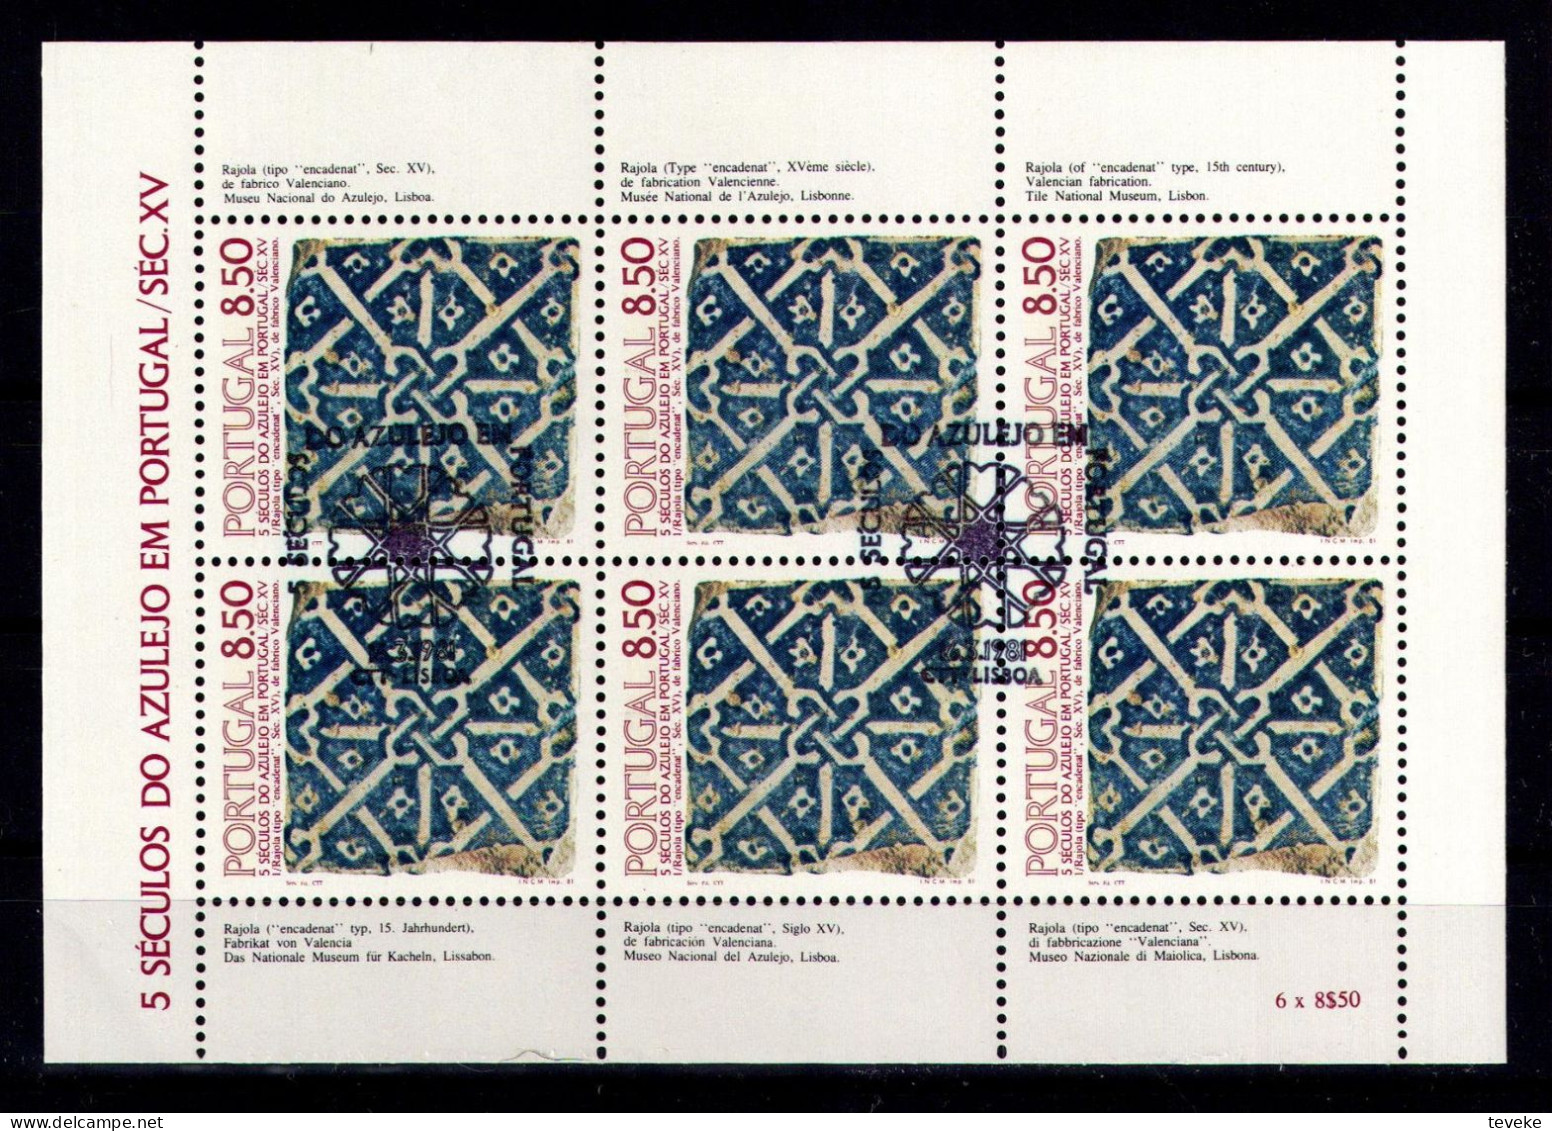 PORTUGAL 1981 - Michel Nr. 1528 KB - USED/ʘ - Azulejos - Oblitérés